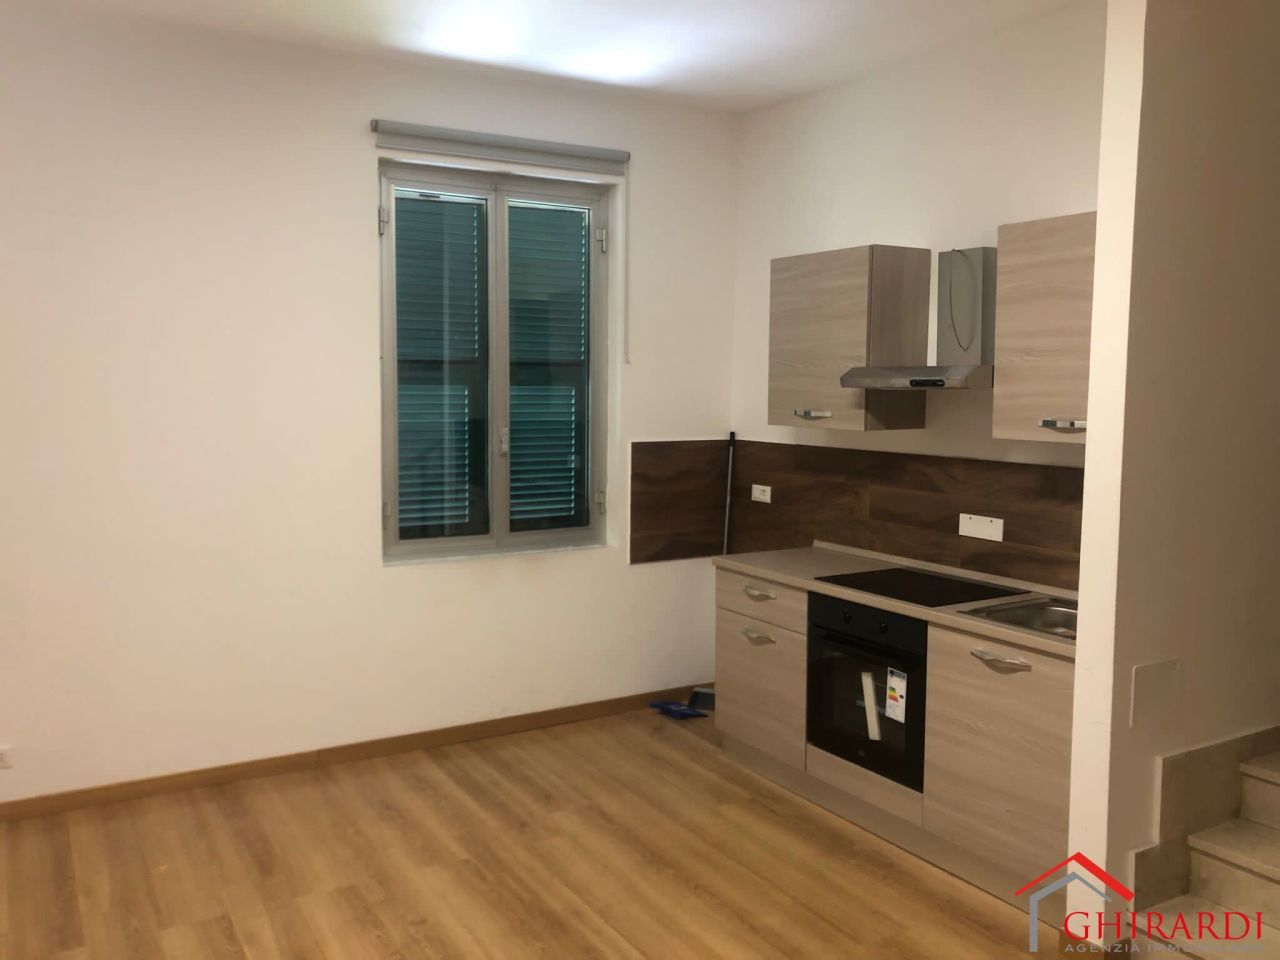 Appartamento in affitto a Genova, 33 locali, prezzo € 480 | PortaleAgenzieImmobiliari.it